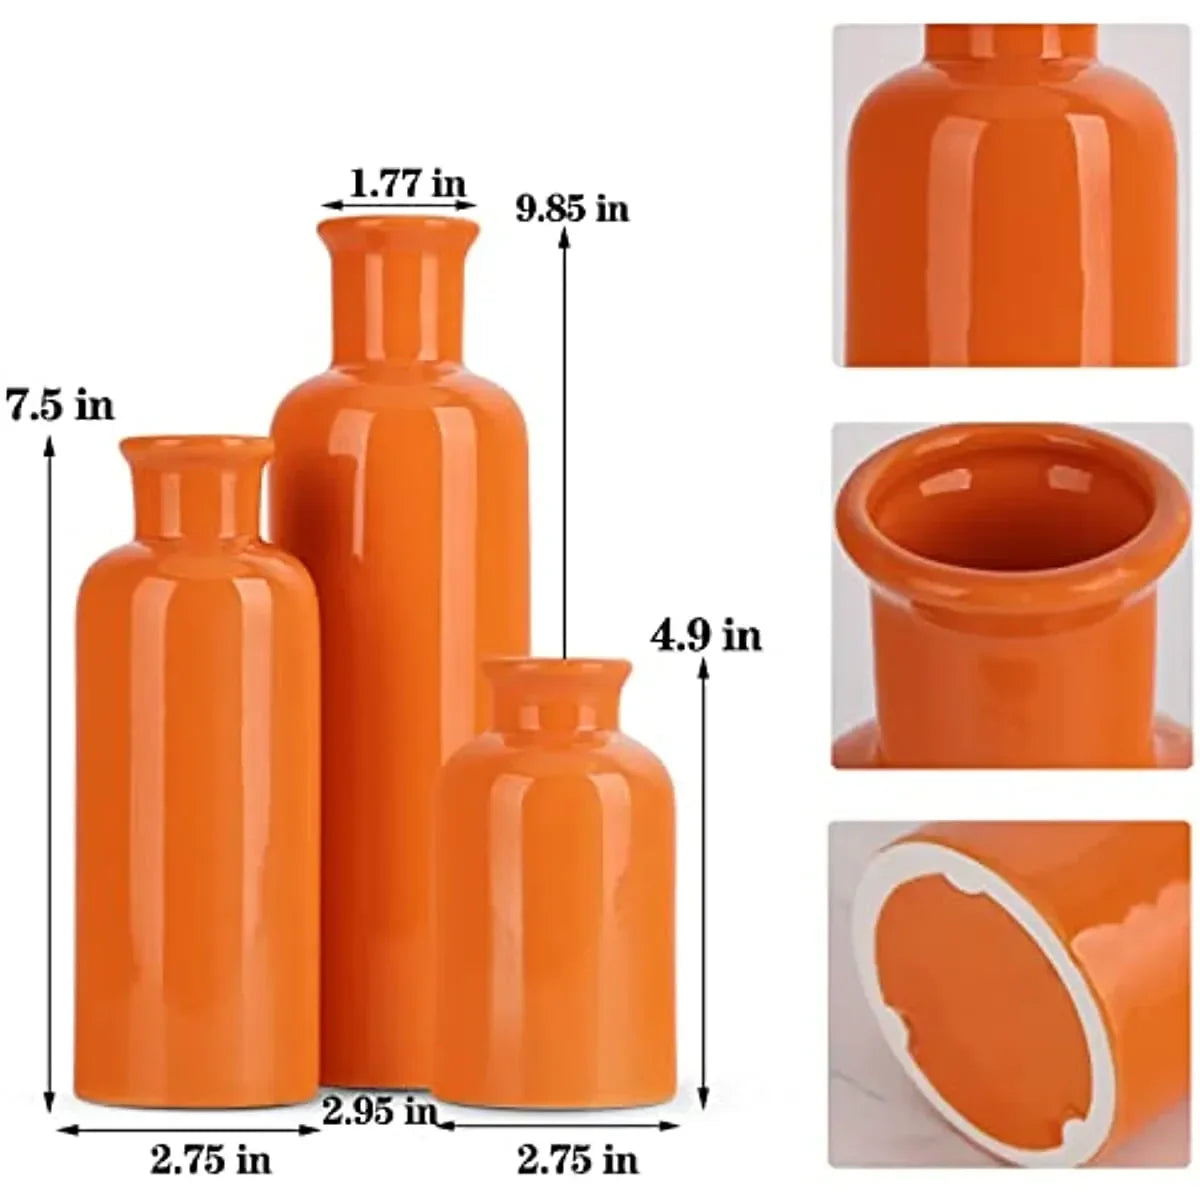 Vase en céramique orange pour 3 décor minimalistes modernes